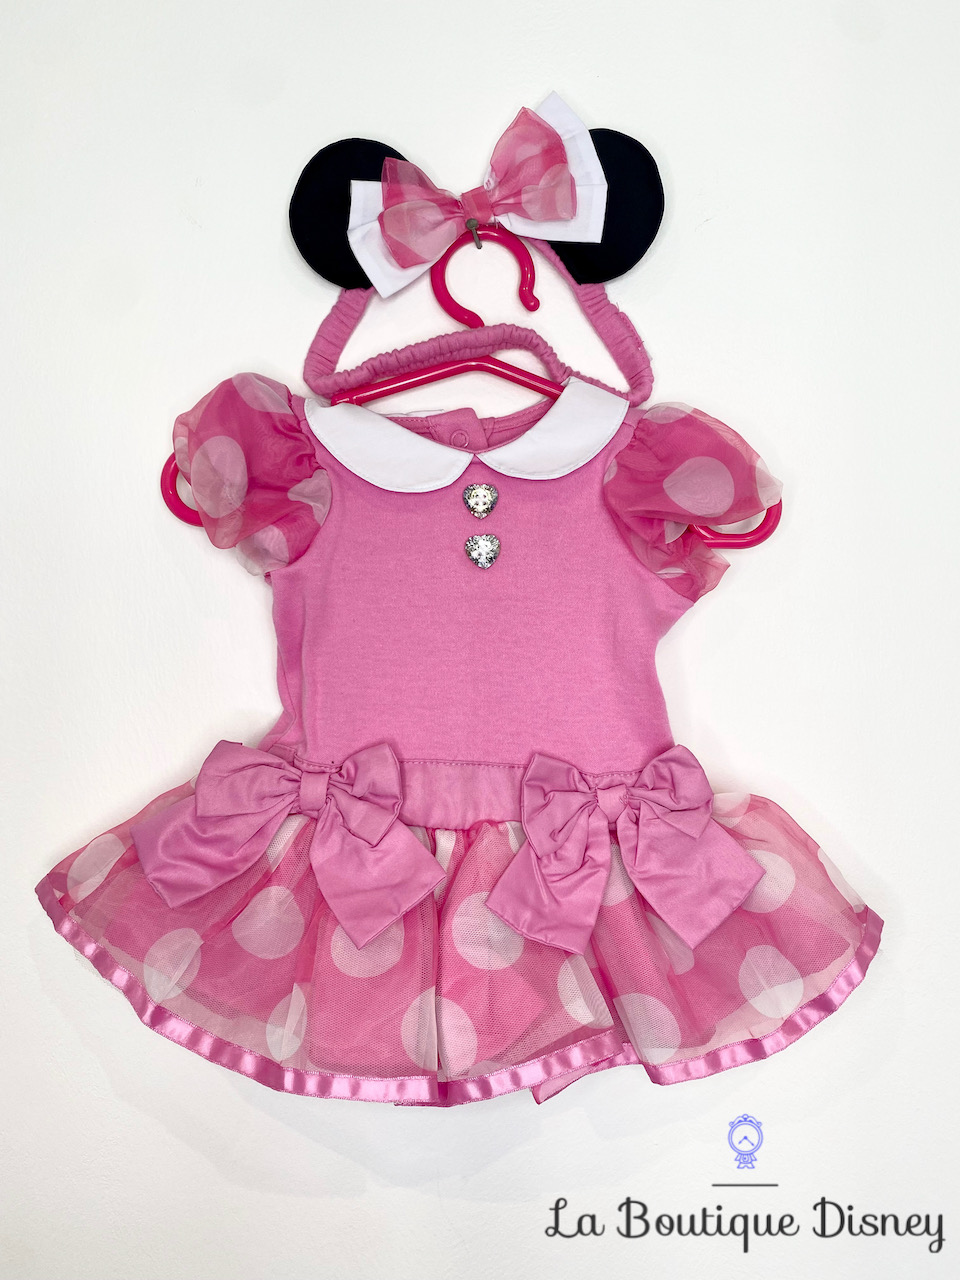 Disney Store Body déguisement pour bébé Mickey